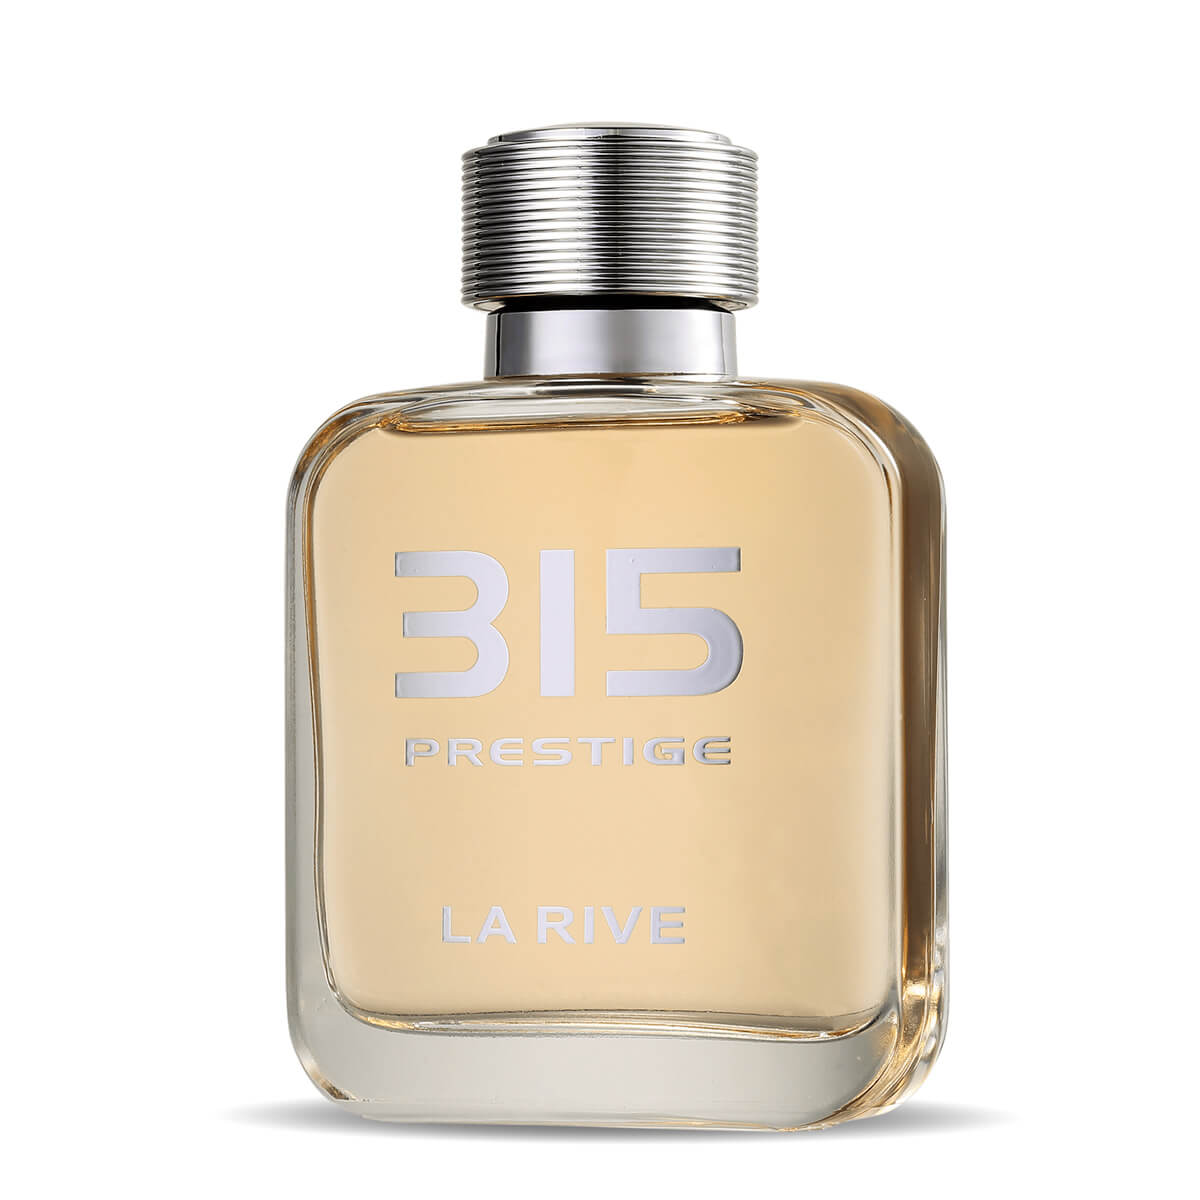 Perfume Prestige 315 Masculino Edt 100ml La Rive